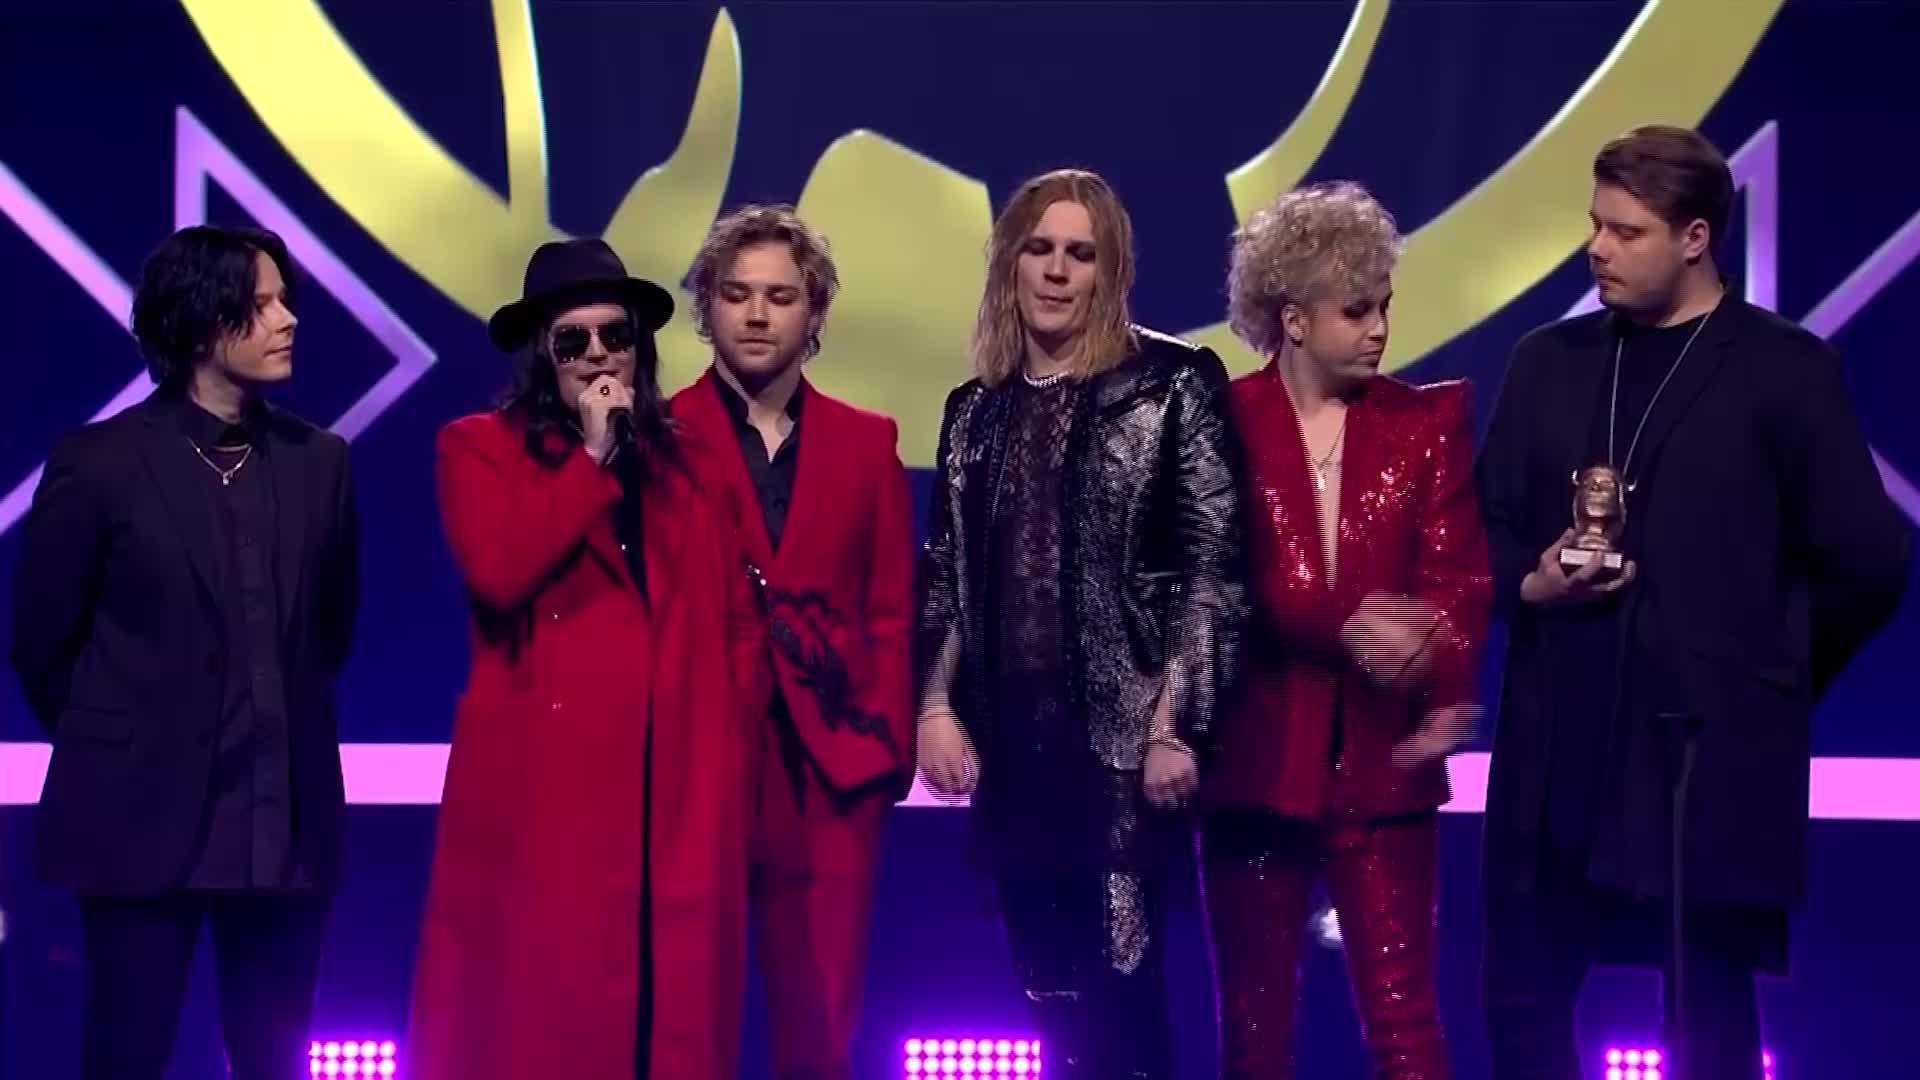 Emma Gaalan palkintohai Blind Channel nappasi järisyttävät kuusi Emma-pystiä! Maailmaa kiertänyt bändi palkittiin vuoden yhtyeeksi kahdesti: ”Hienoa olla suomalaisen musiikkiviennin uuden aallon kirkkainta kärkeä”